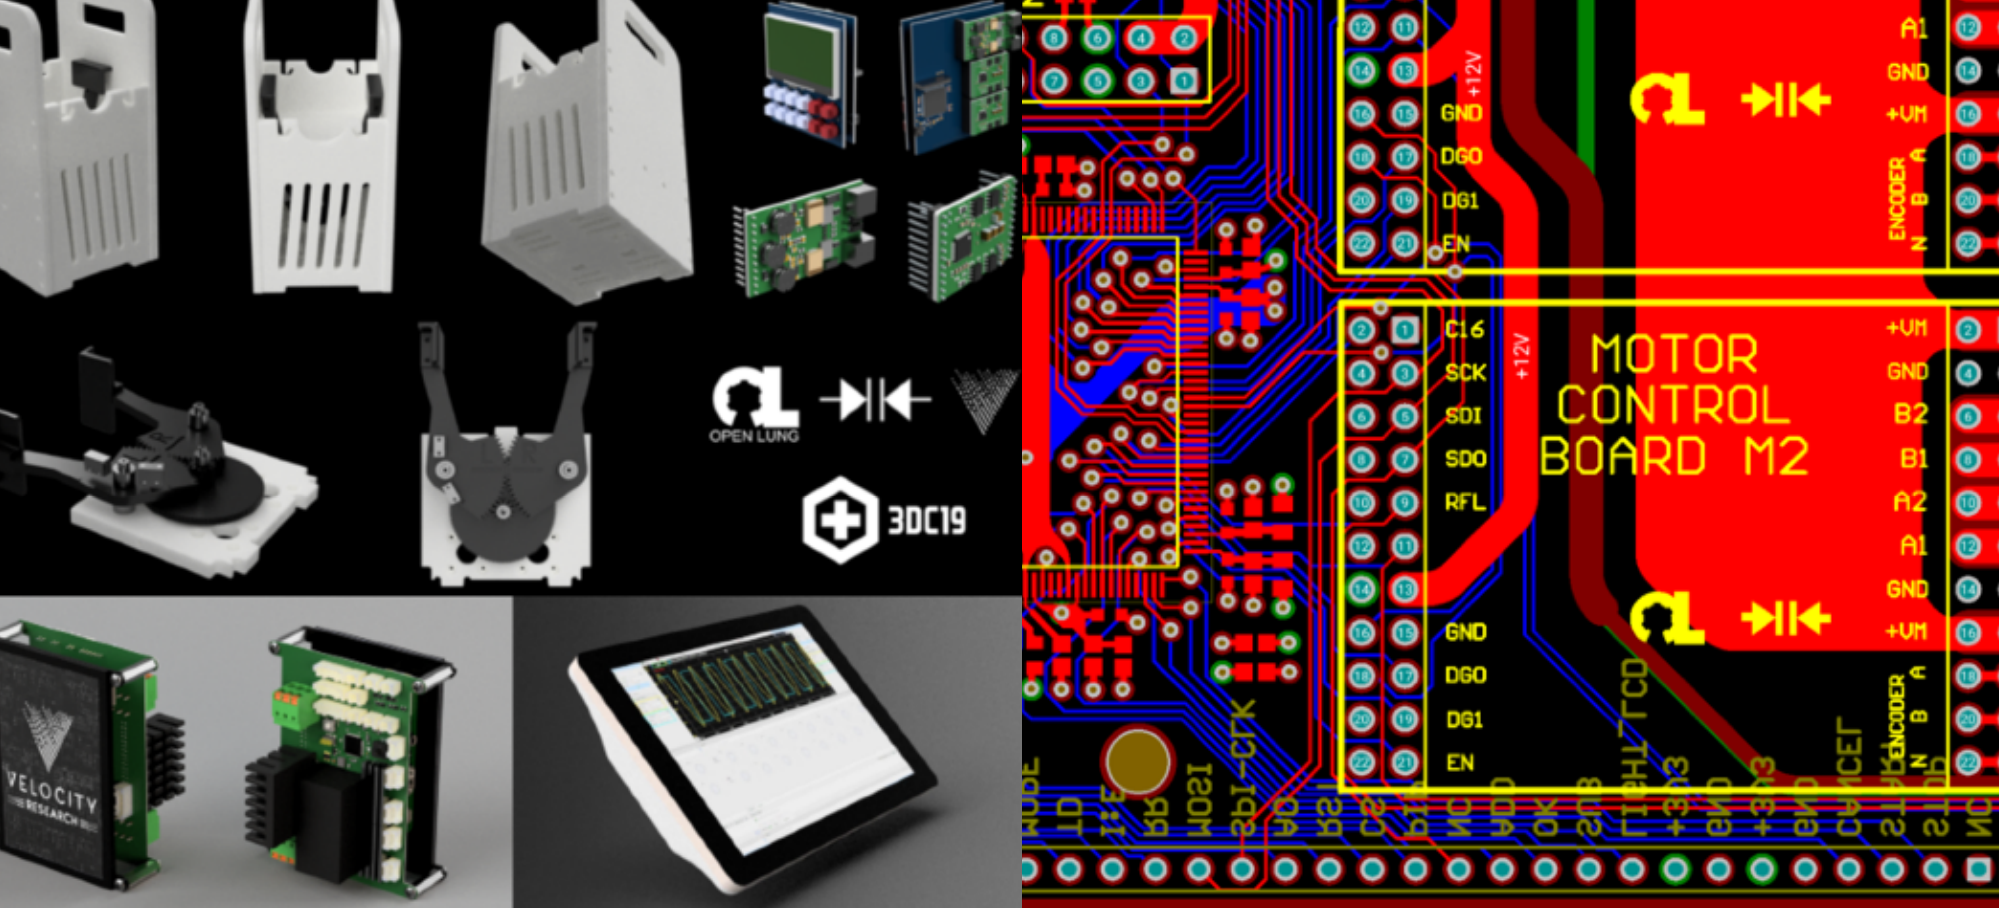 Esempi di schermate delle fasi di progettazione per la produzione dei circuiti stampati dei ventilatori polmonari.